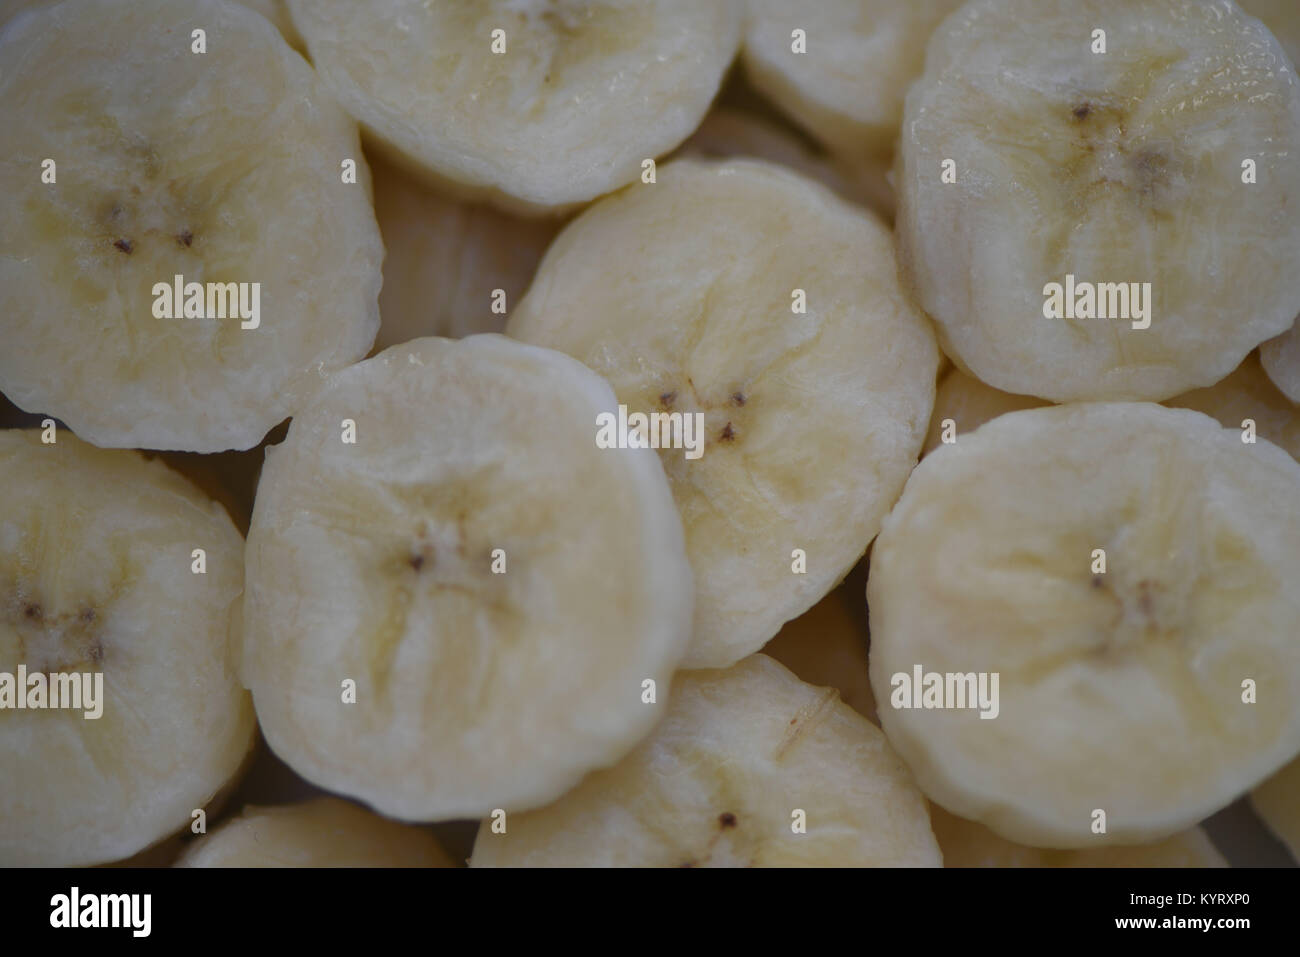 Nahaufnahme makro Food Fotografie der gesunden frisches Obst von Bananen in Scheiben von gelber Farbe und füllt das Bild für eine Zusammenfassung Hintergrund Stockfoto